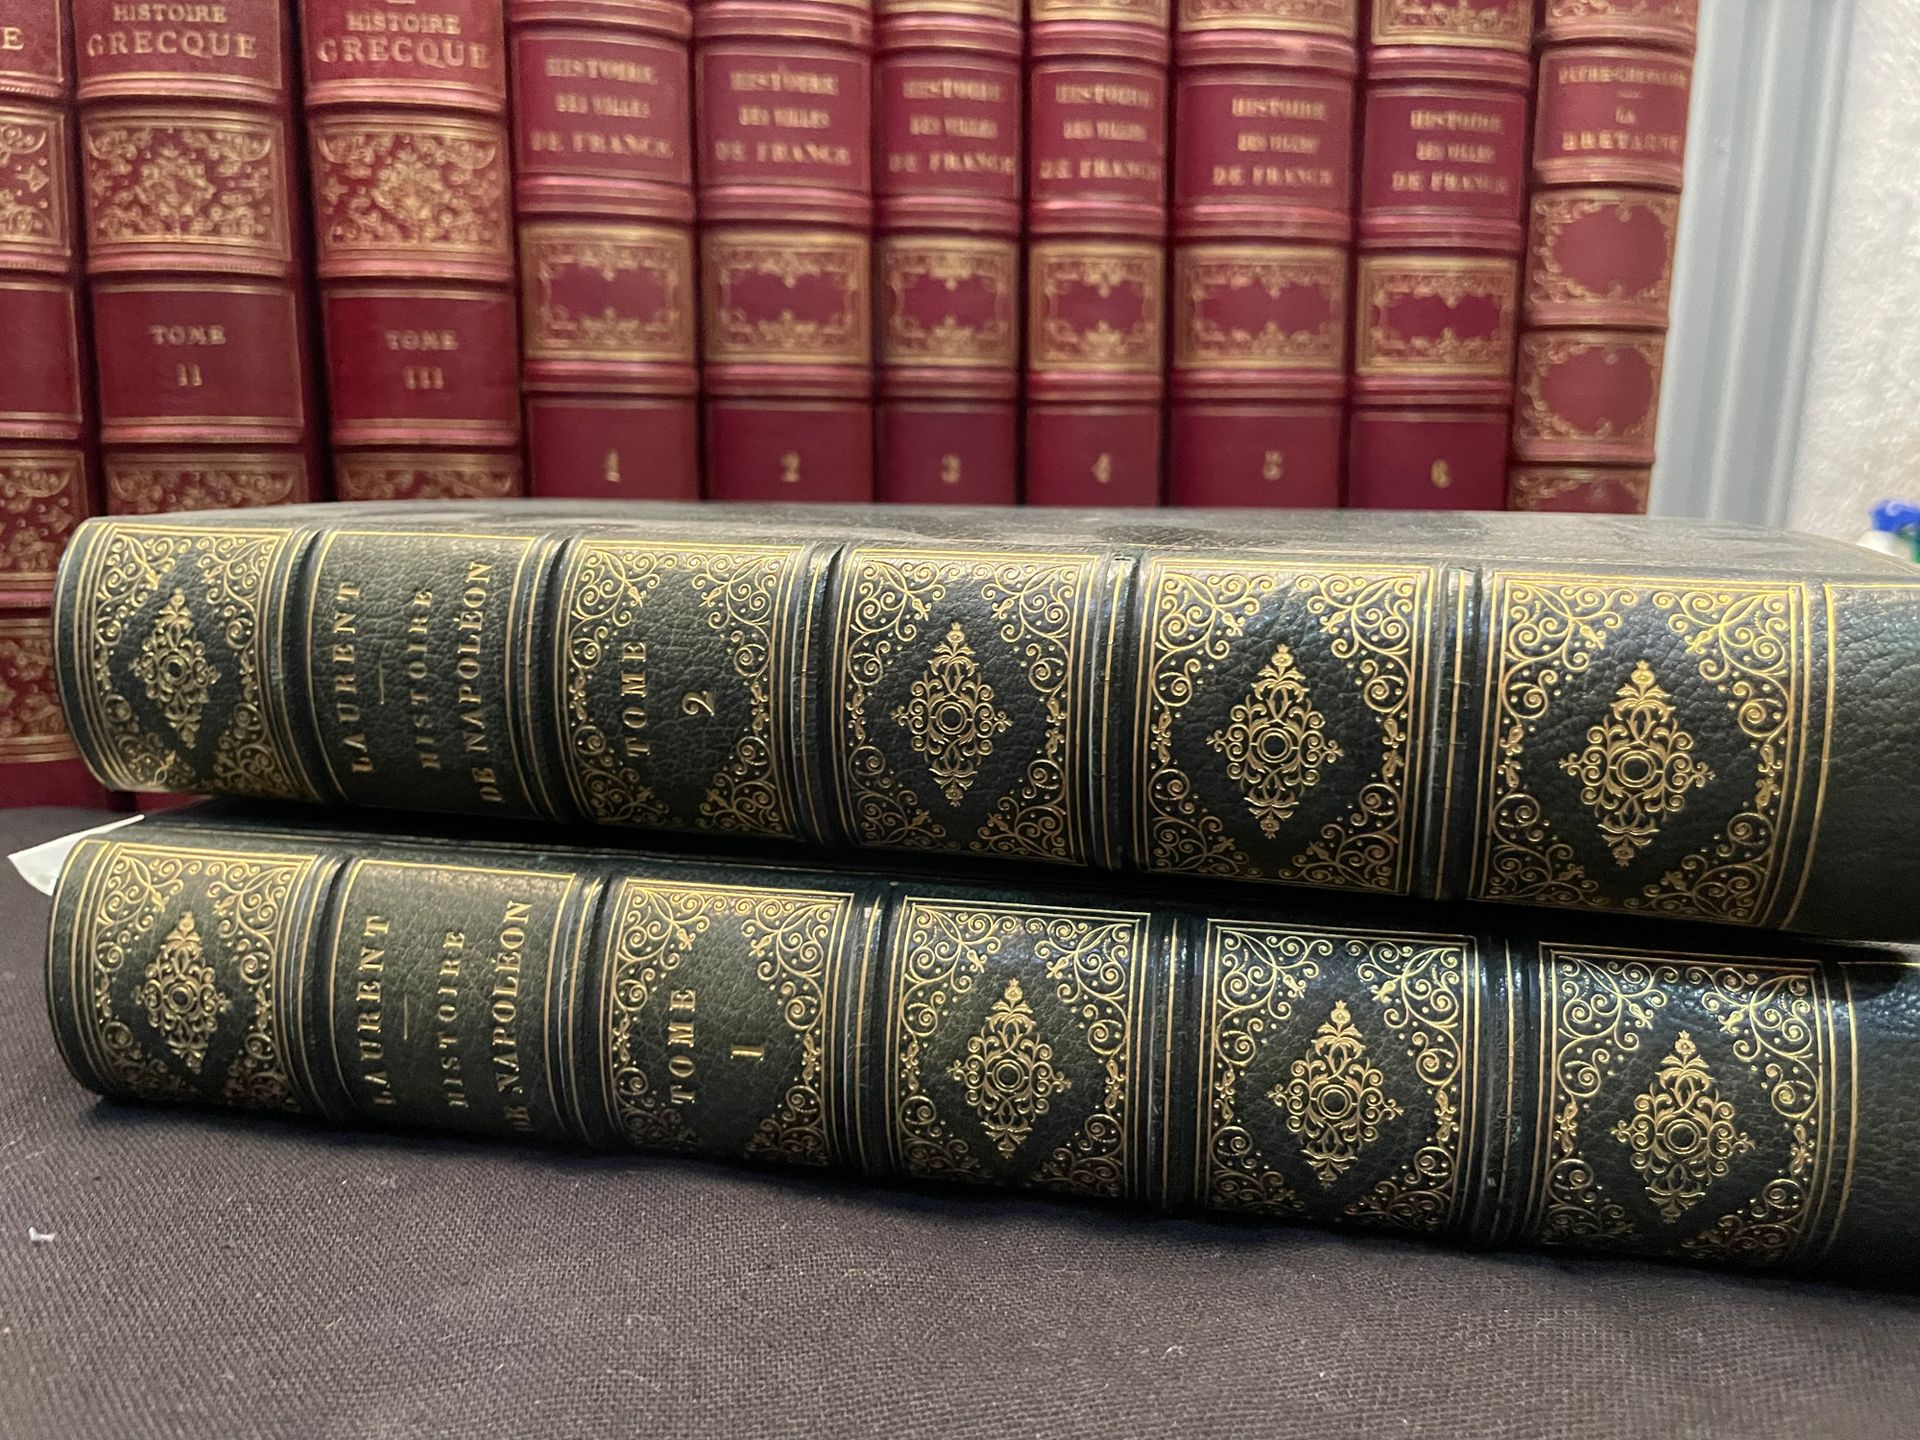 LAURENT DE L'ARDÈCHE Napoleon.
2 volumes (as is)